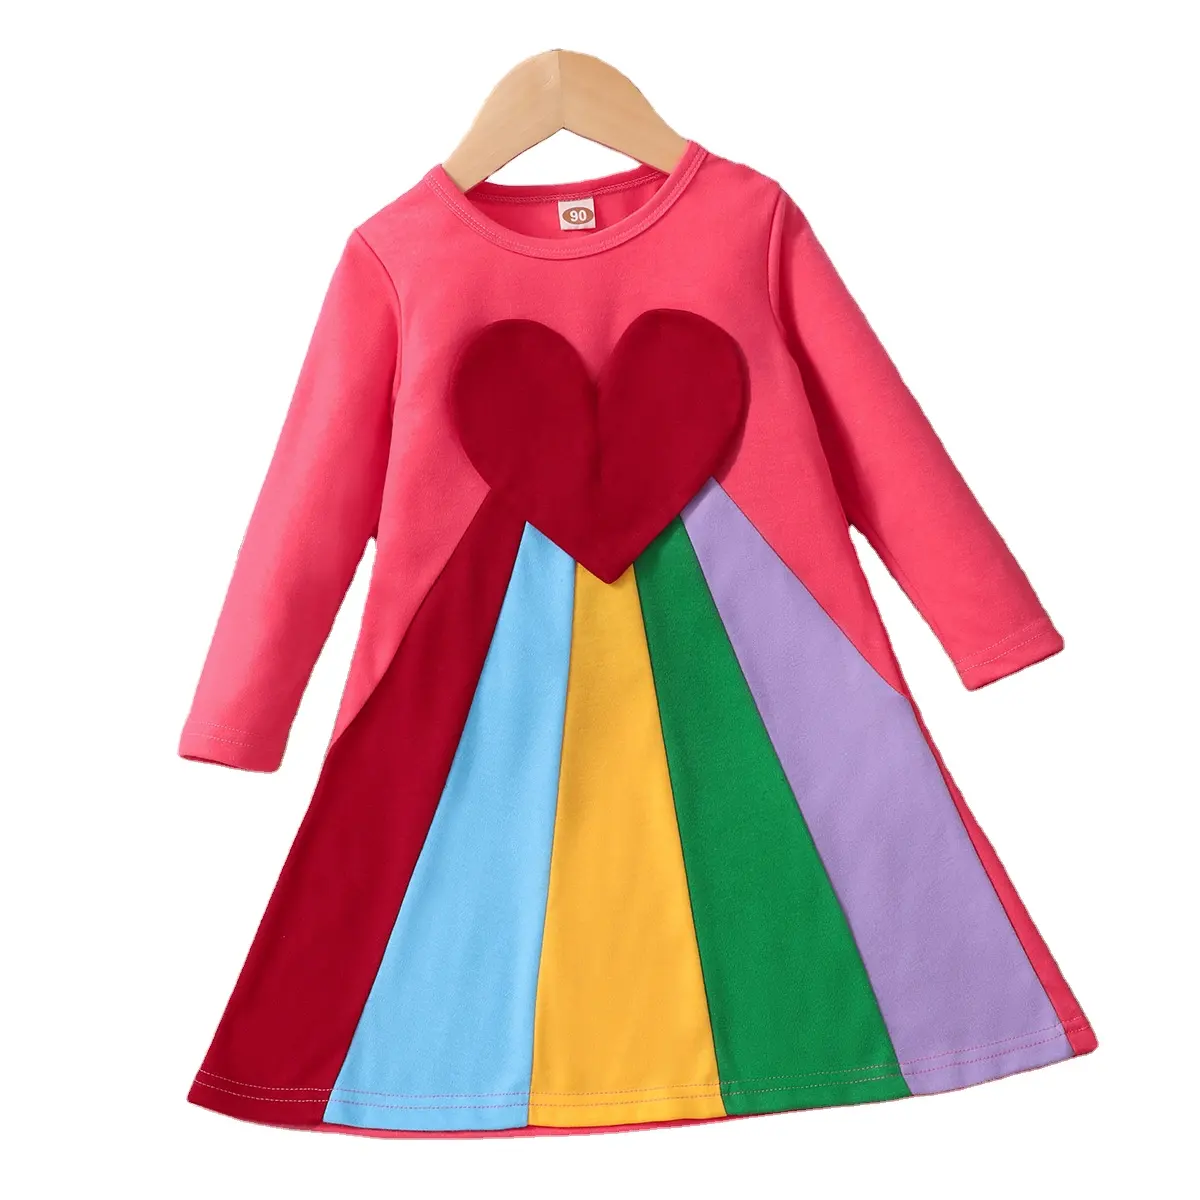 Vestido de manga longa para crianças, vestido colorido amor gola arco-íris